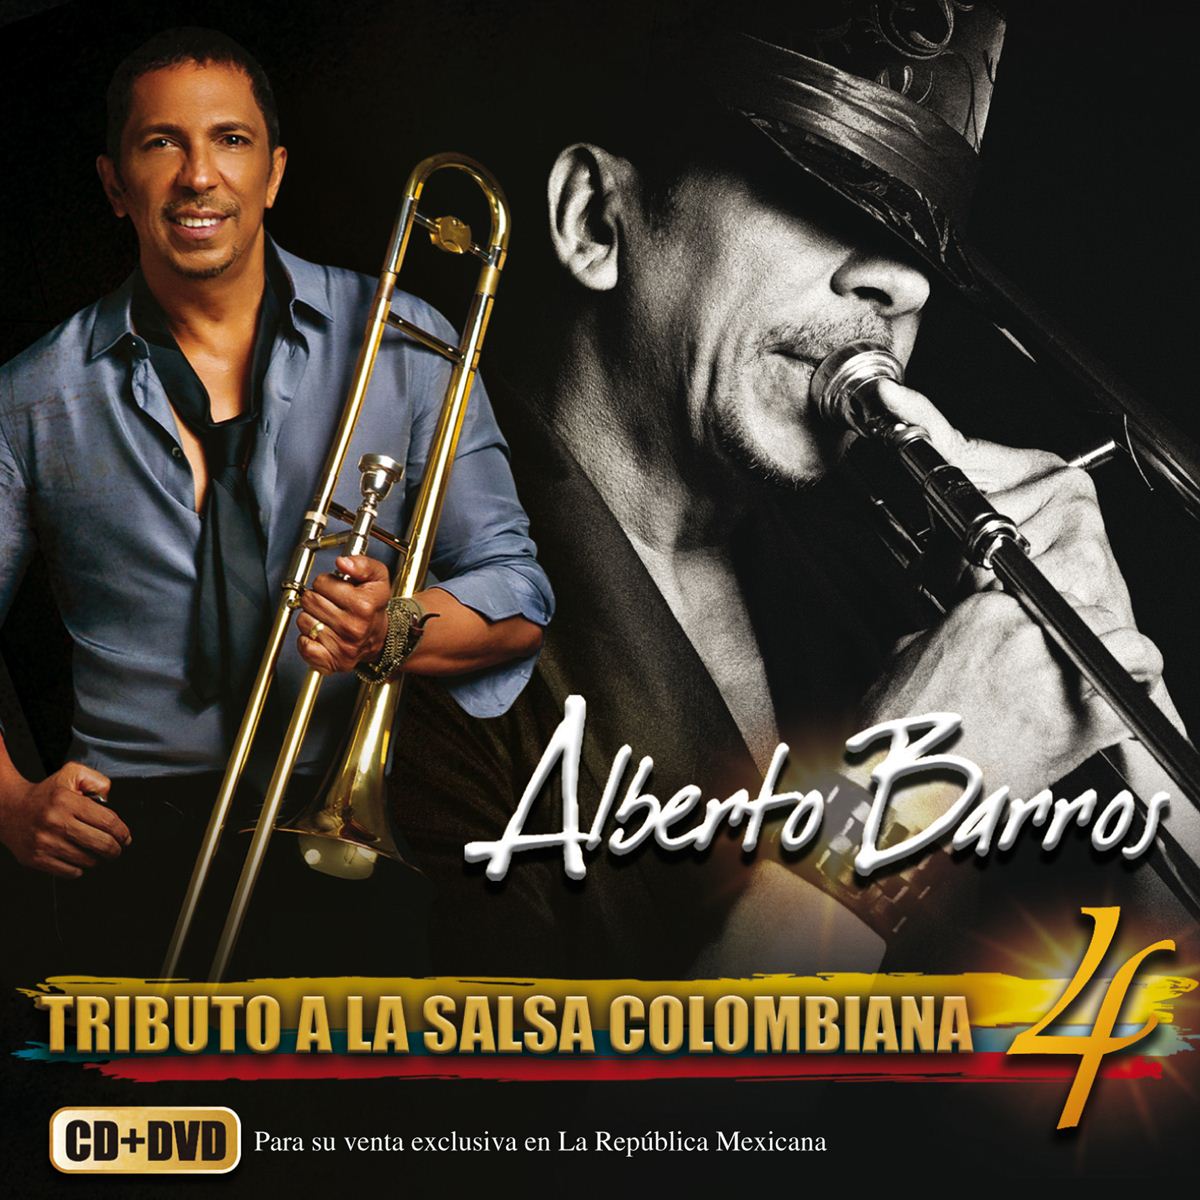 4Cd&#47;Dvd Alberto Barros&#45;Tributo A La Salsa Colombiana